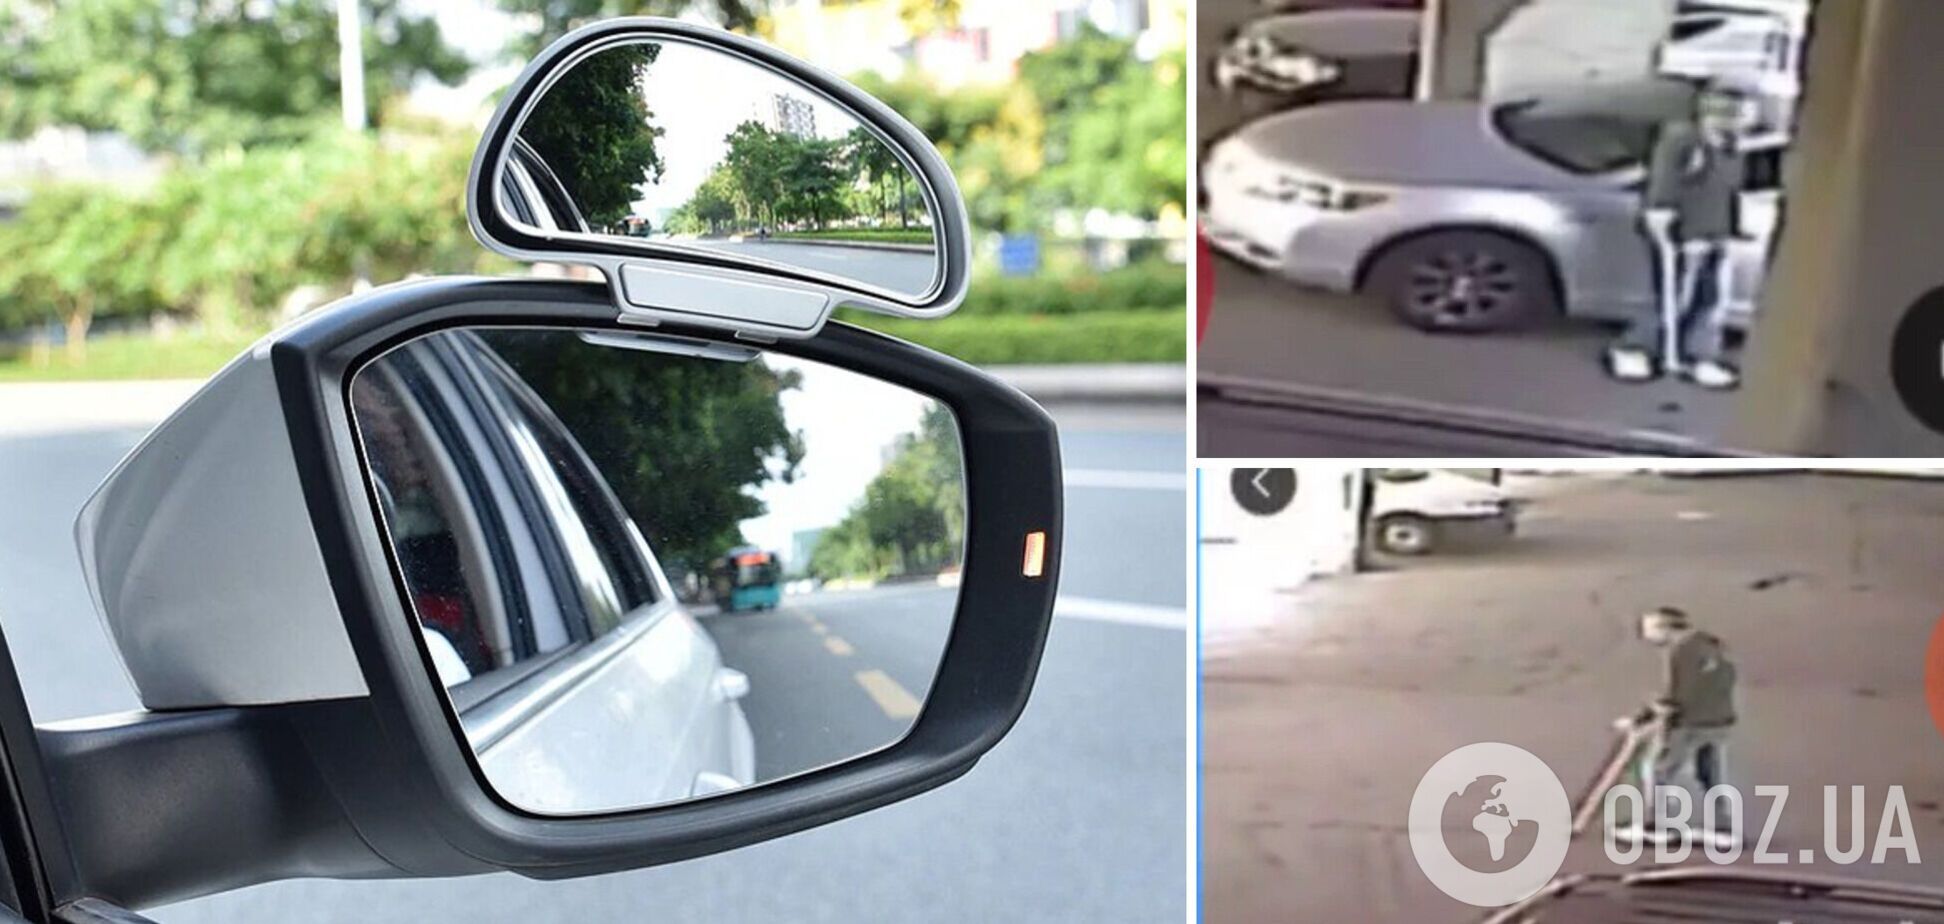 Мужчина, прикрываясь костылями, ворует зеркала с авто